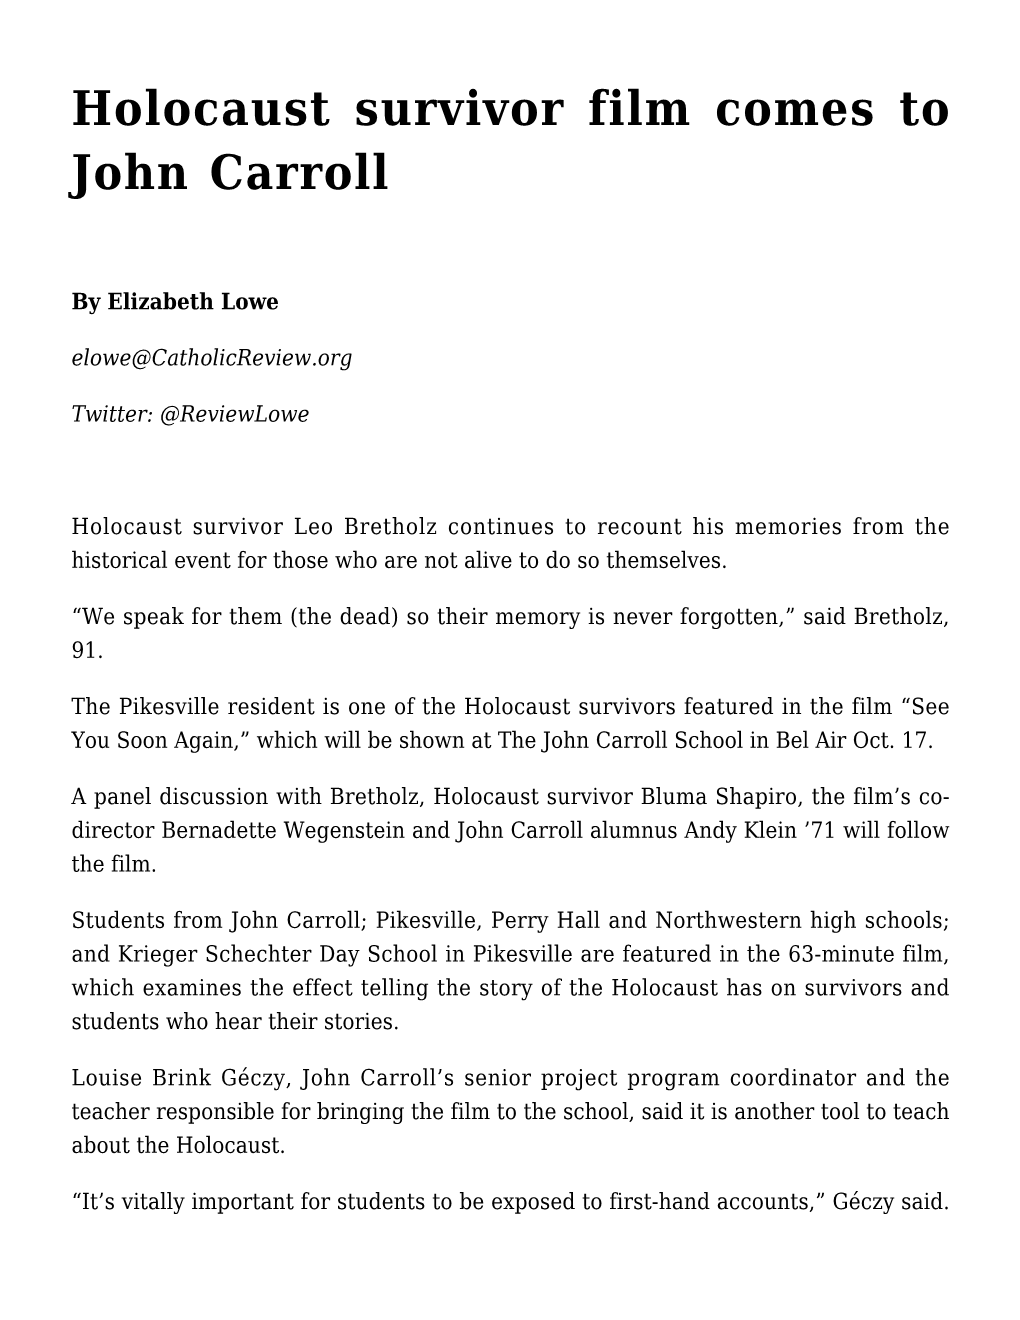 Holocaust Survivor Film Comes to John Carroll